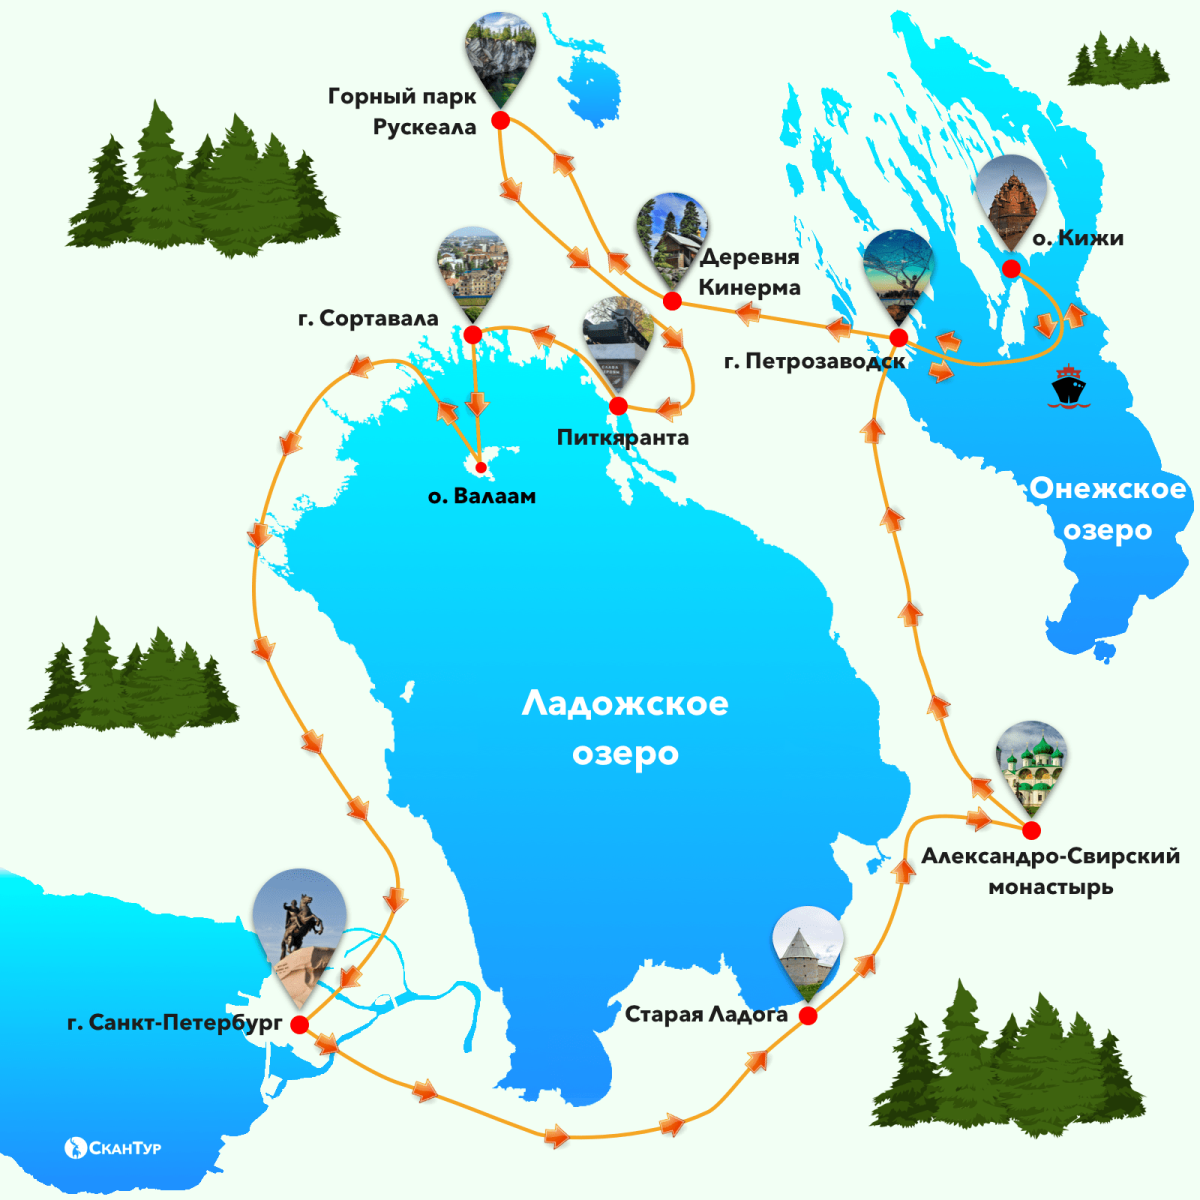 Туристический маршрут по Карелии. Карта горного парка Рускеала. Рускеала карта парка. Карелия достопримечательности на машине.